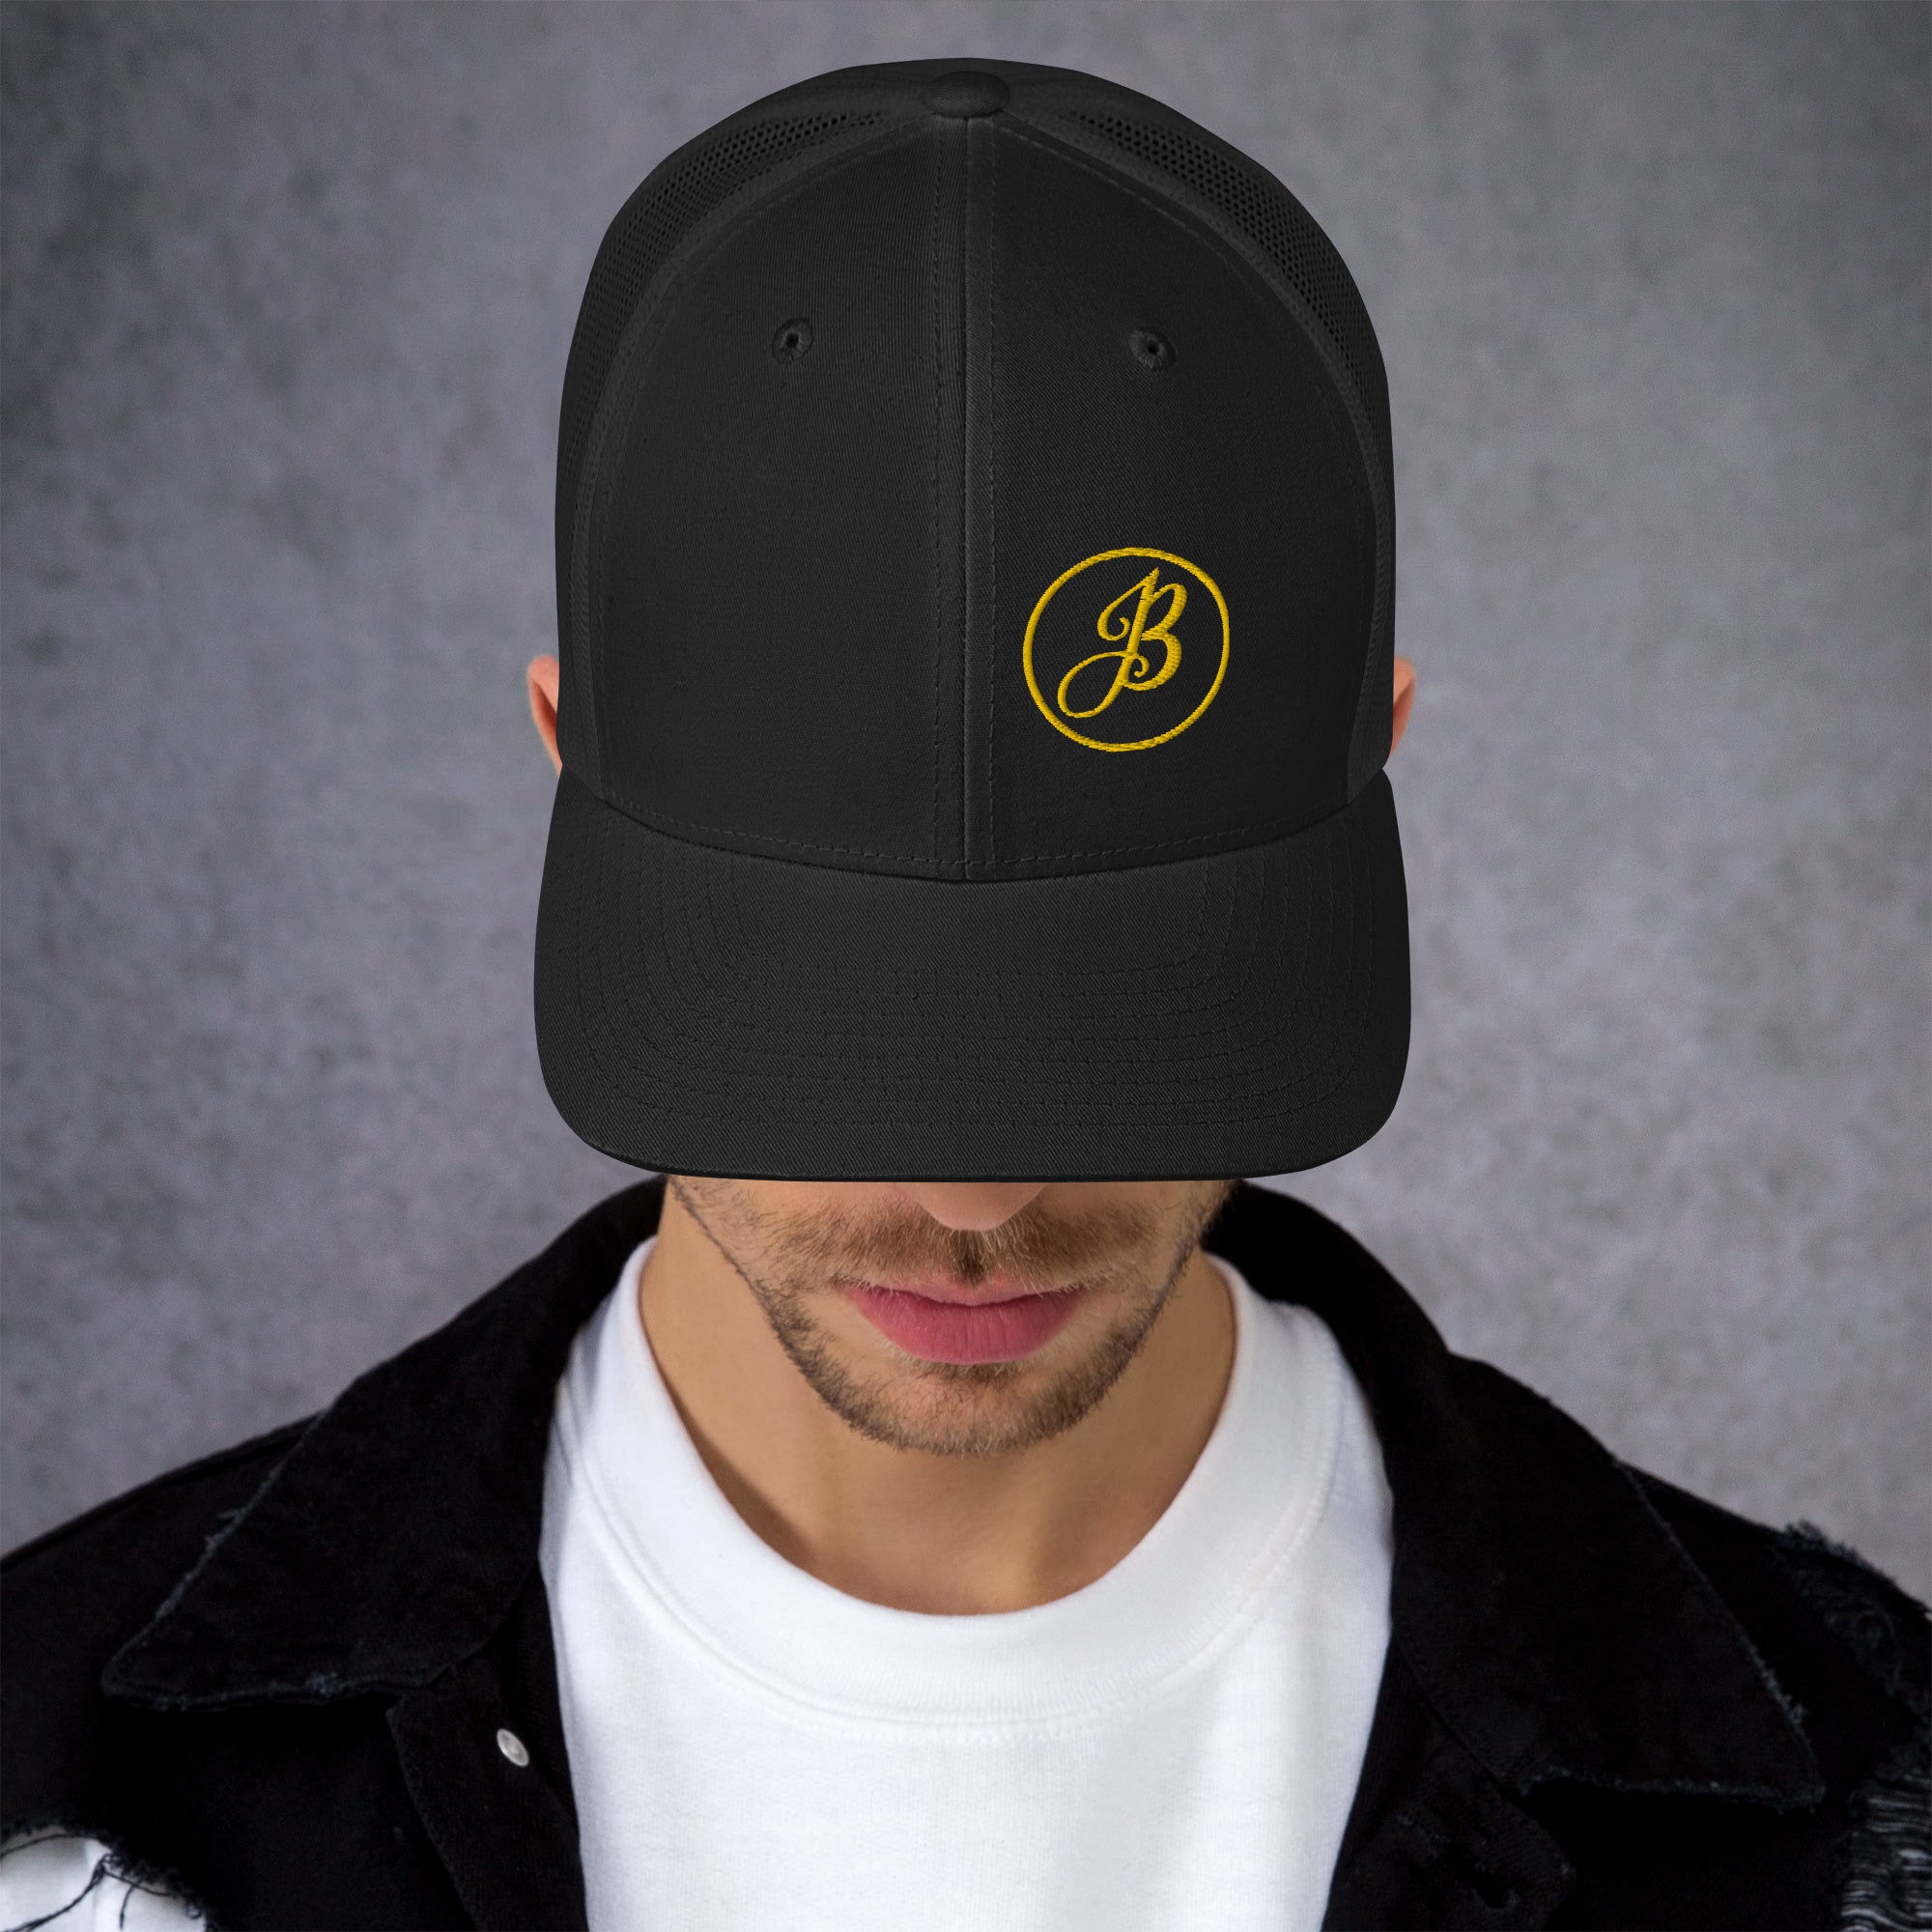 JB Logo Gold Black Trucker Cap